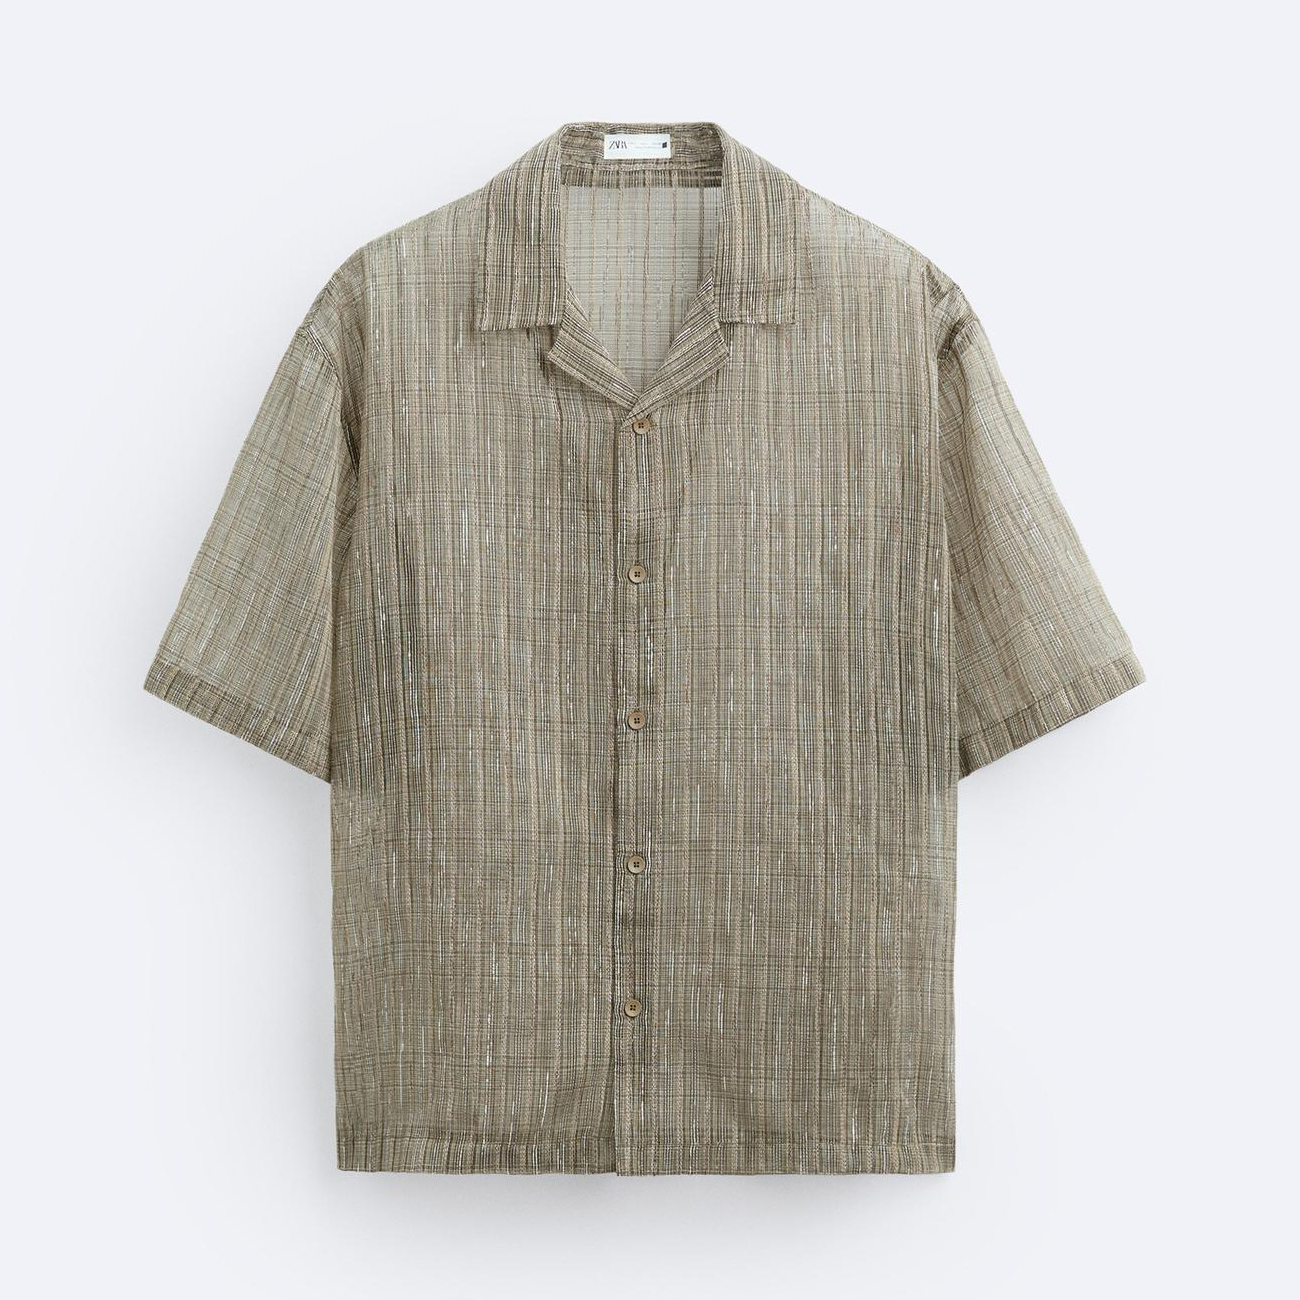 Рубашка Zara Semi-sheer Textured, серо-коричневый рубашка zara semi sheer textured серо коричневый